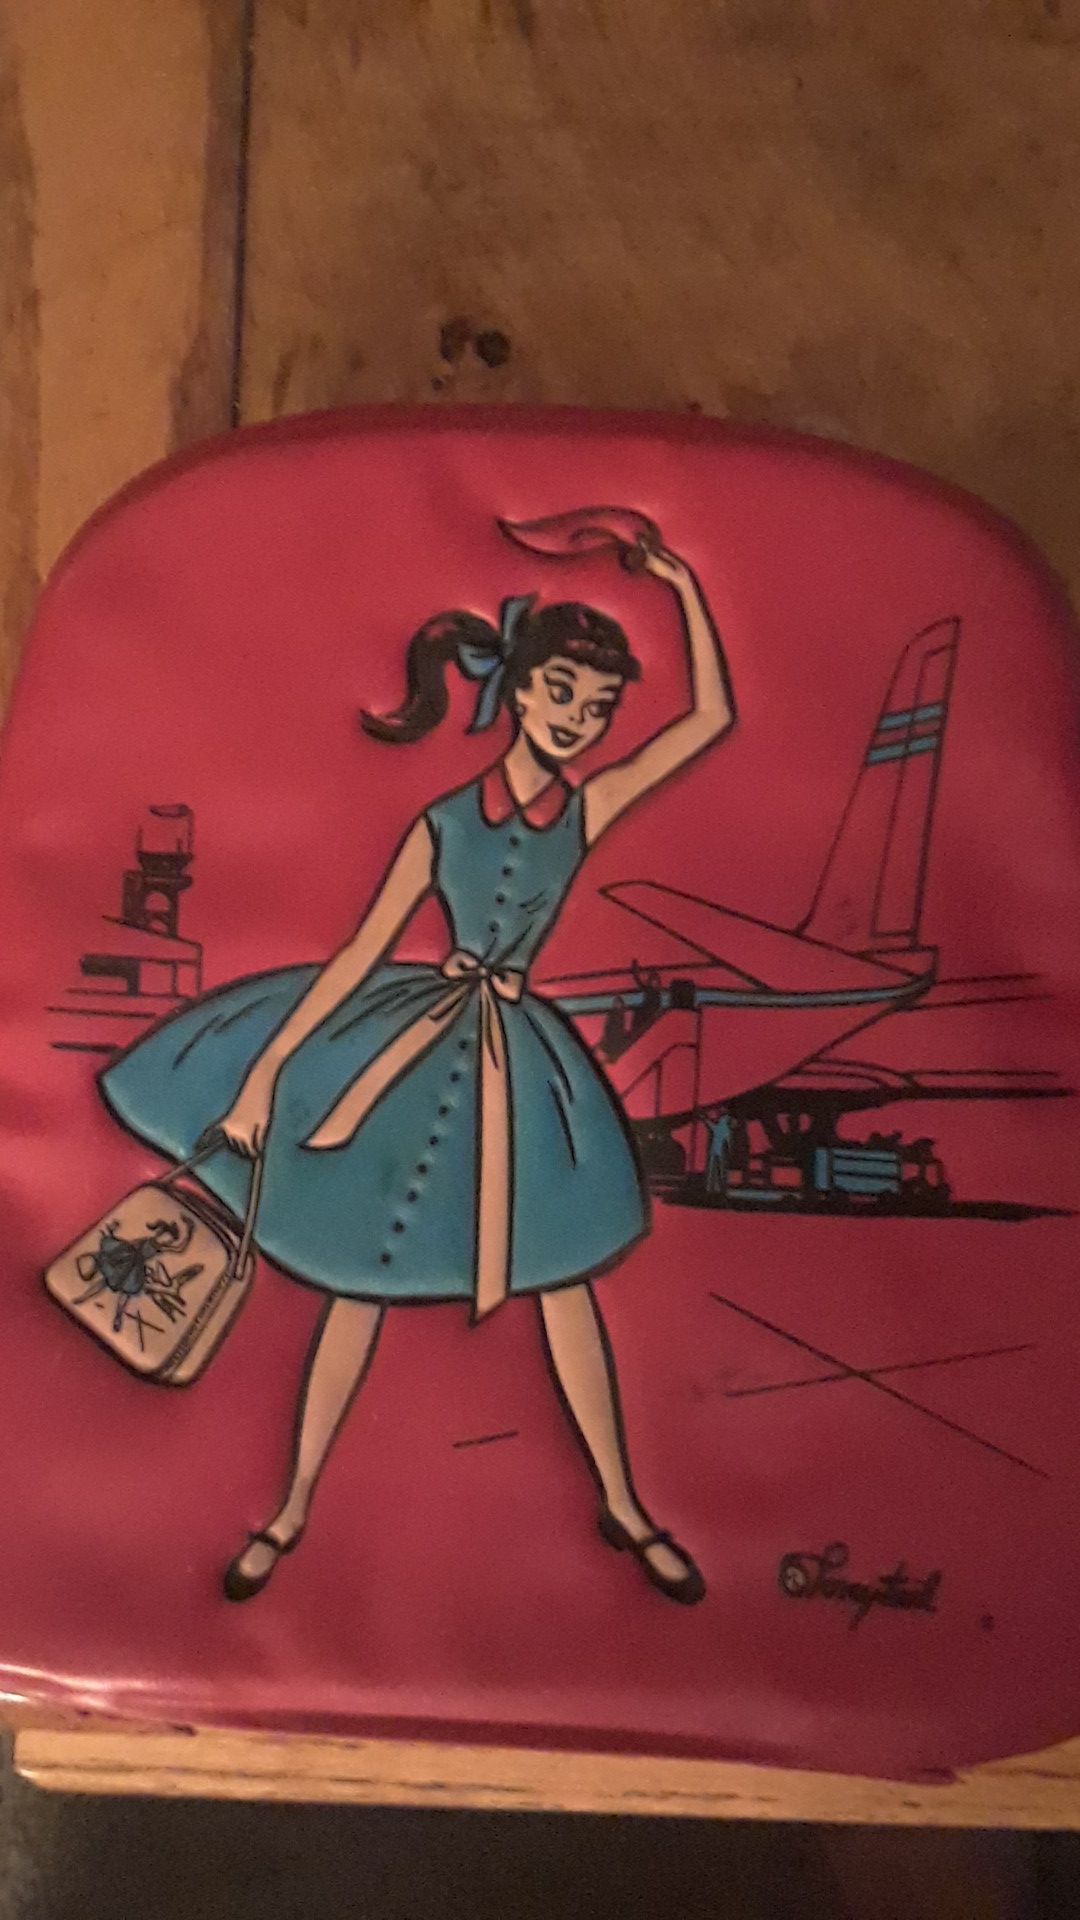 A Barbie bag